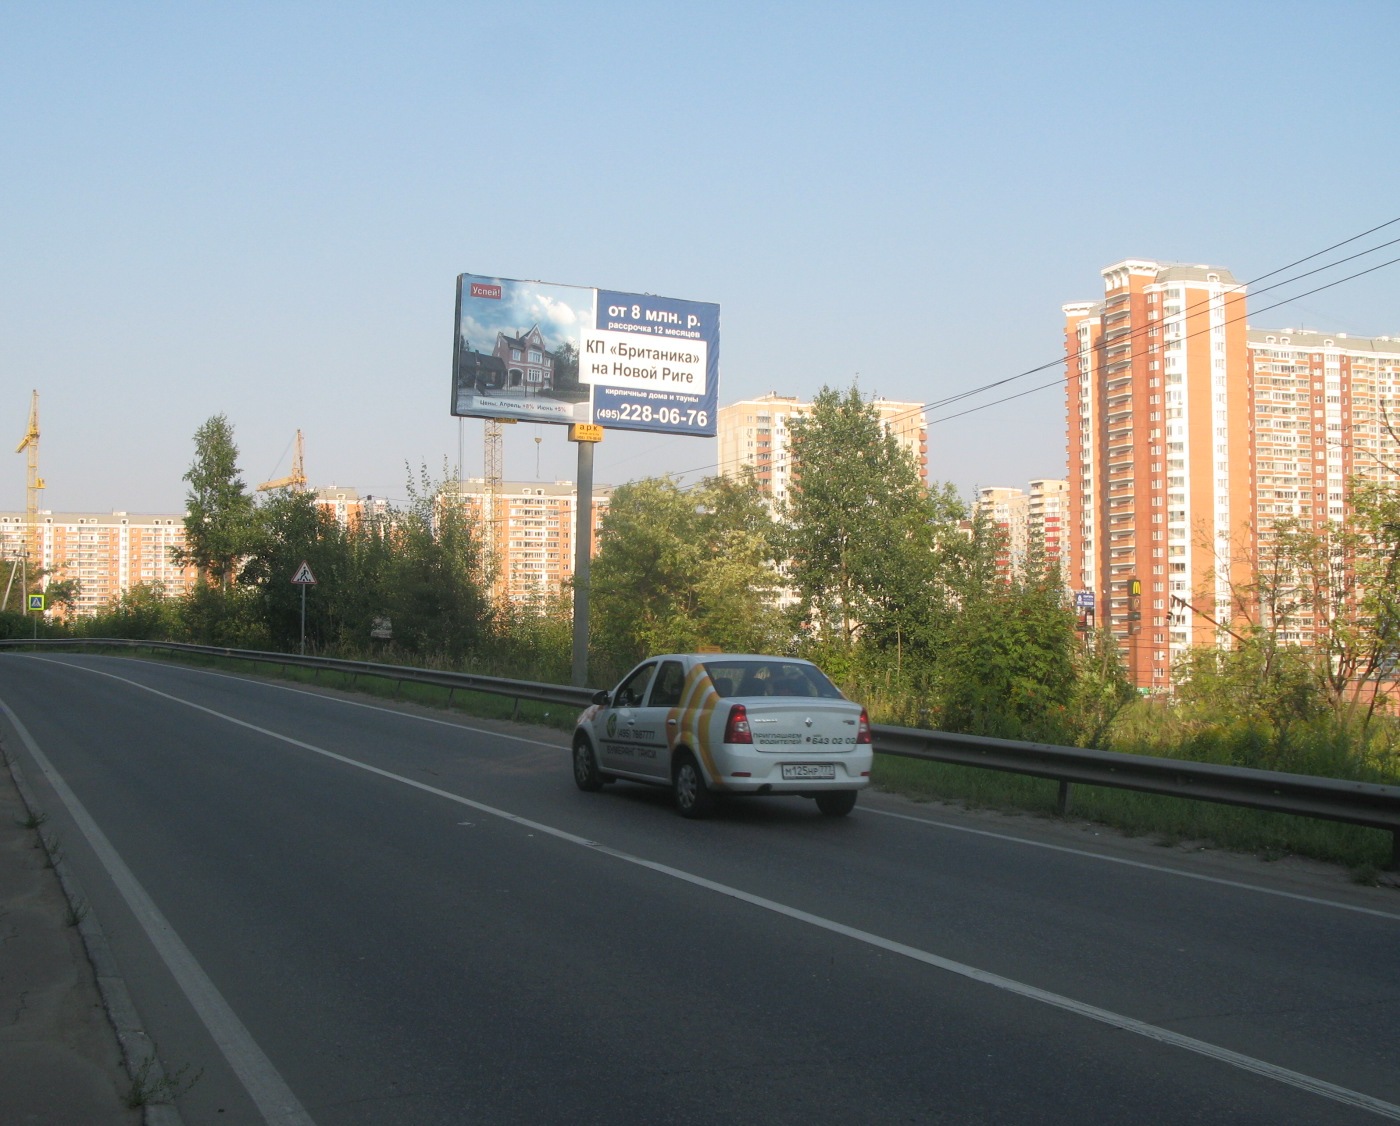 Пенягинское ш., 330м до выезда на Волоколамское ш., справа, г.Красногорск